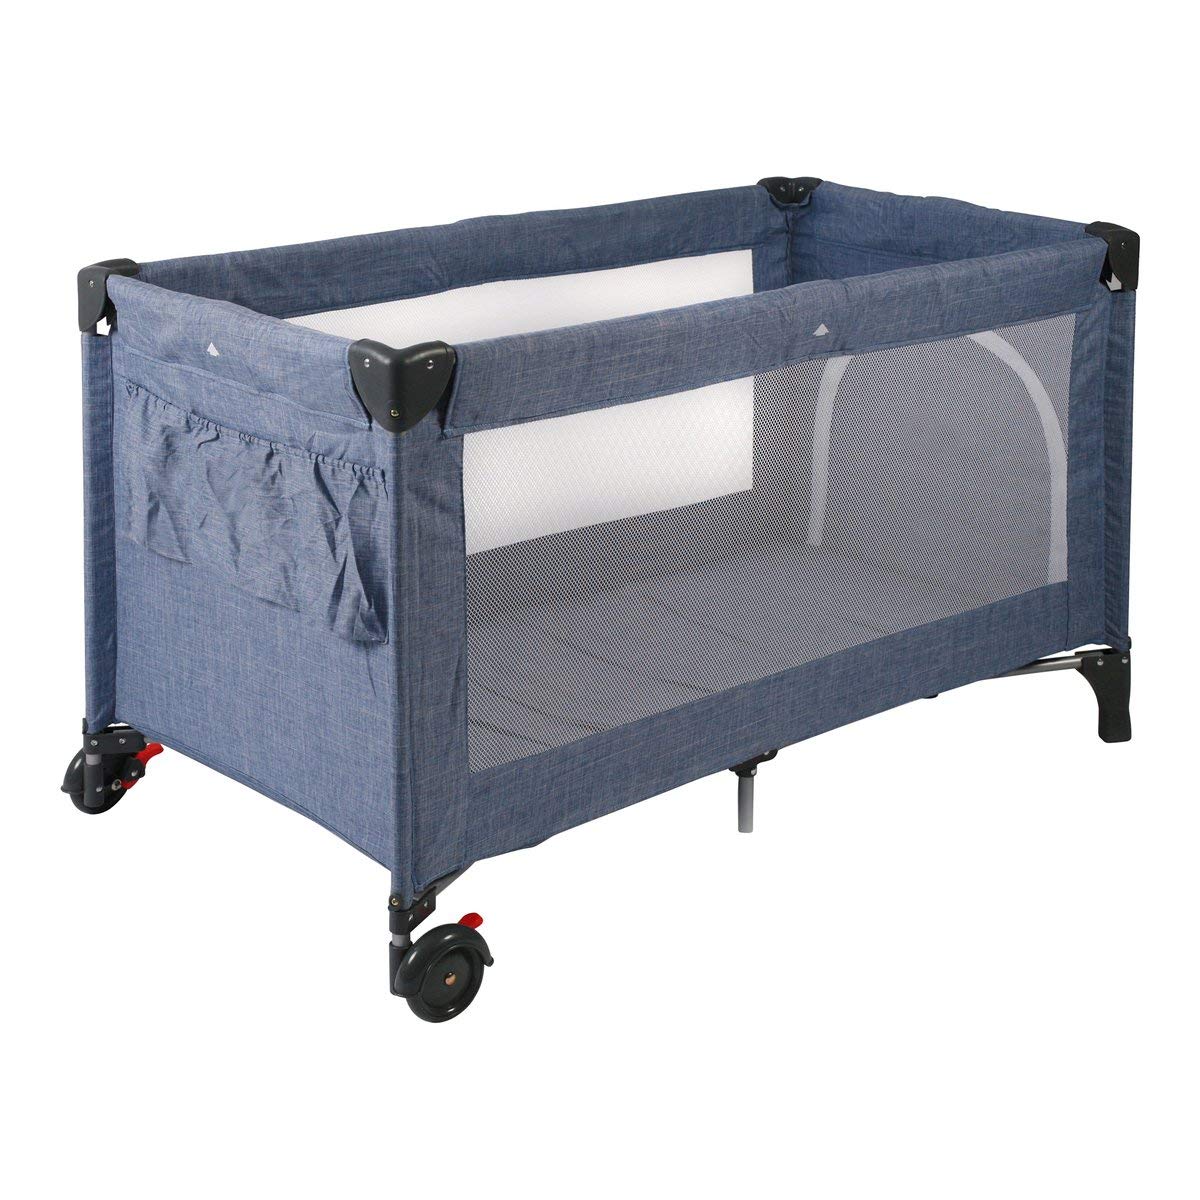 CHIC 4 BABY 340 55 Reisebett LUXUS mit Einhängeboden für Neugeborene und Tragetasche, Jeans blau